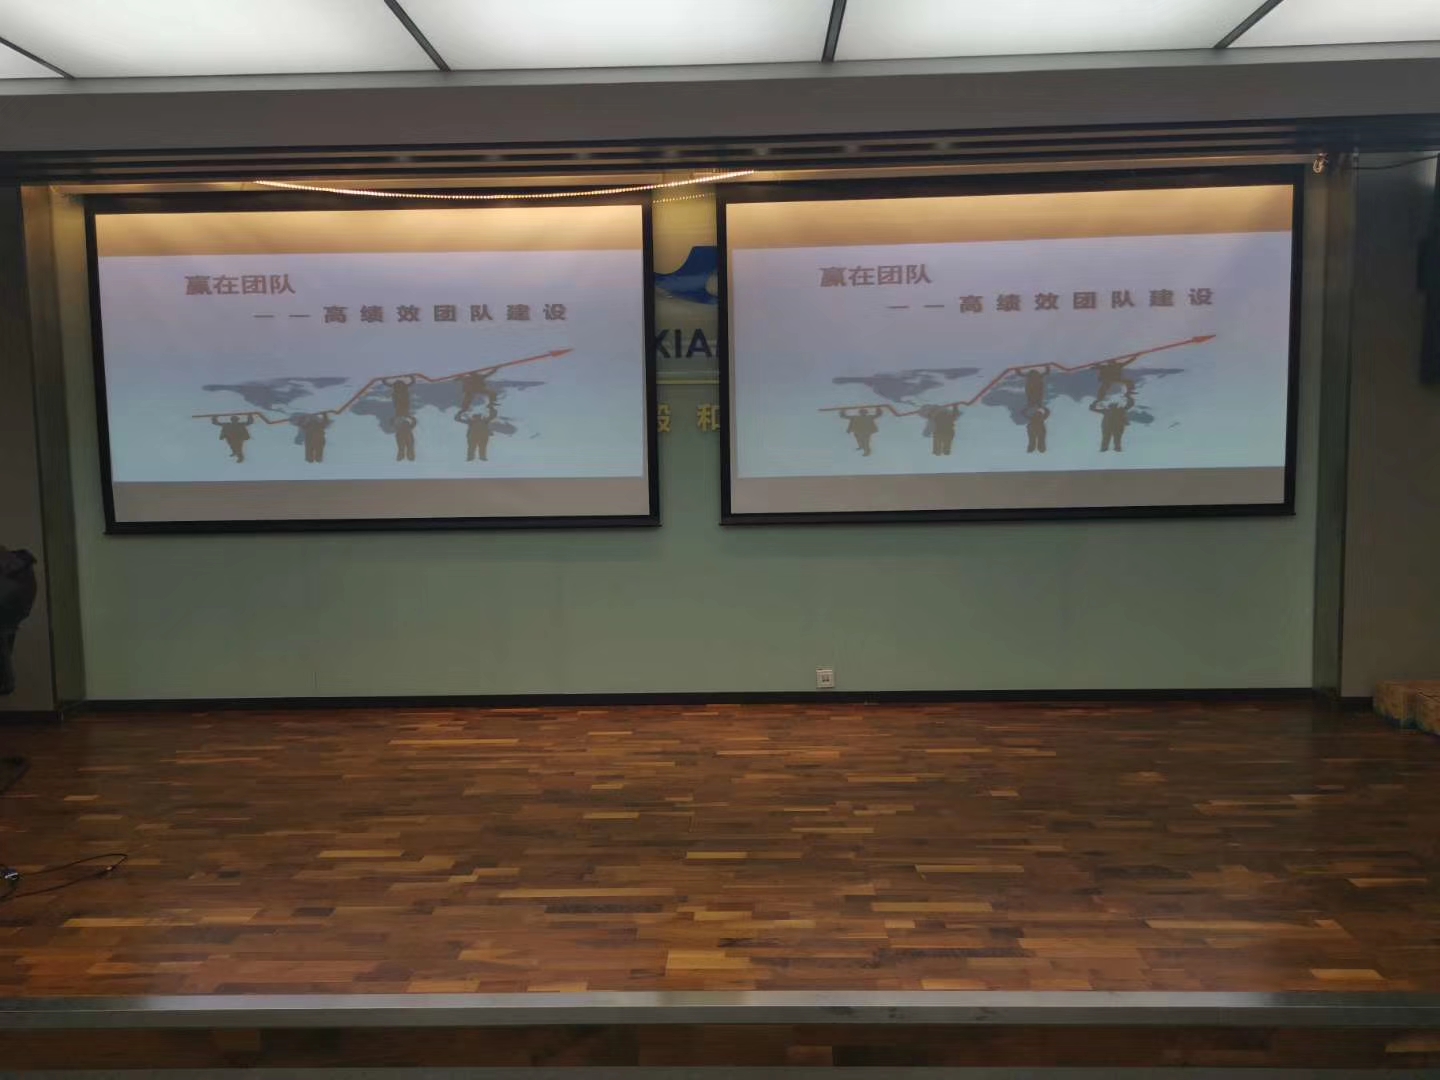 刘志翔老师2020年1月10日在福州给厦航讲授《高绩效团队建设》课程圆满结束！